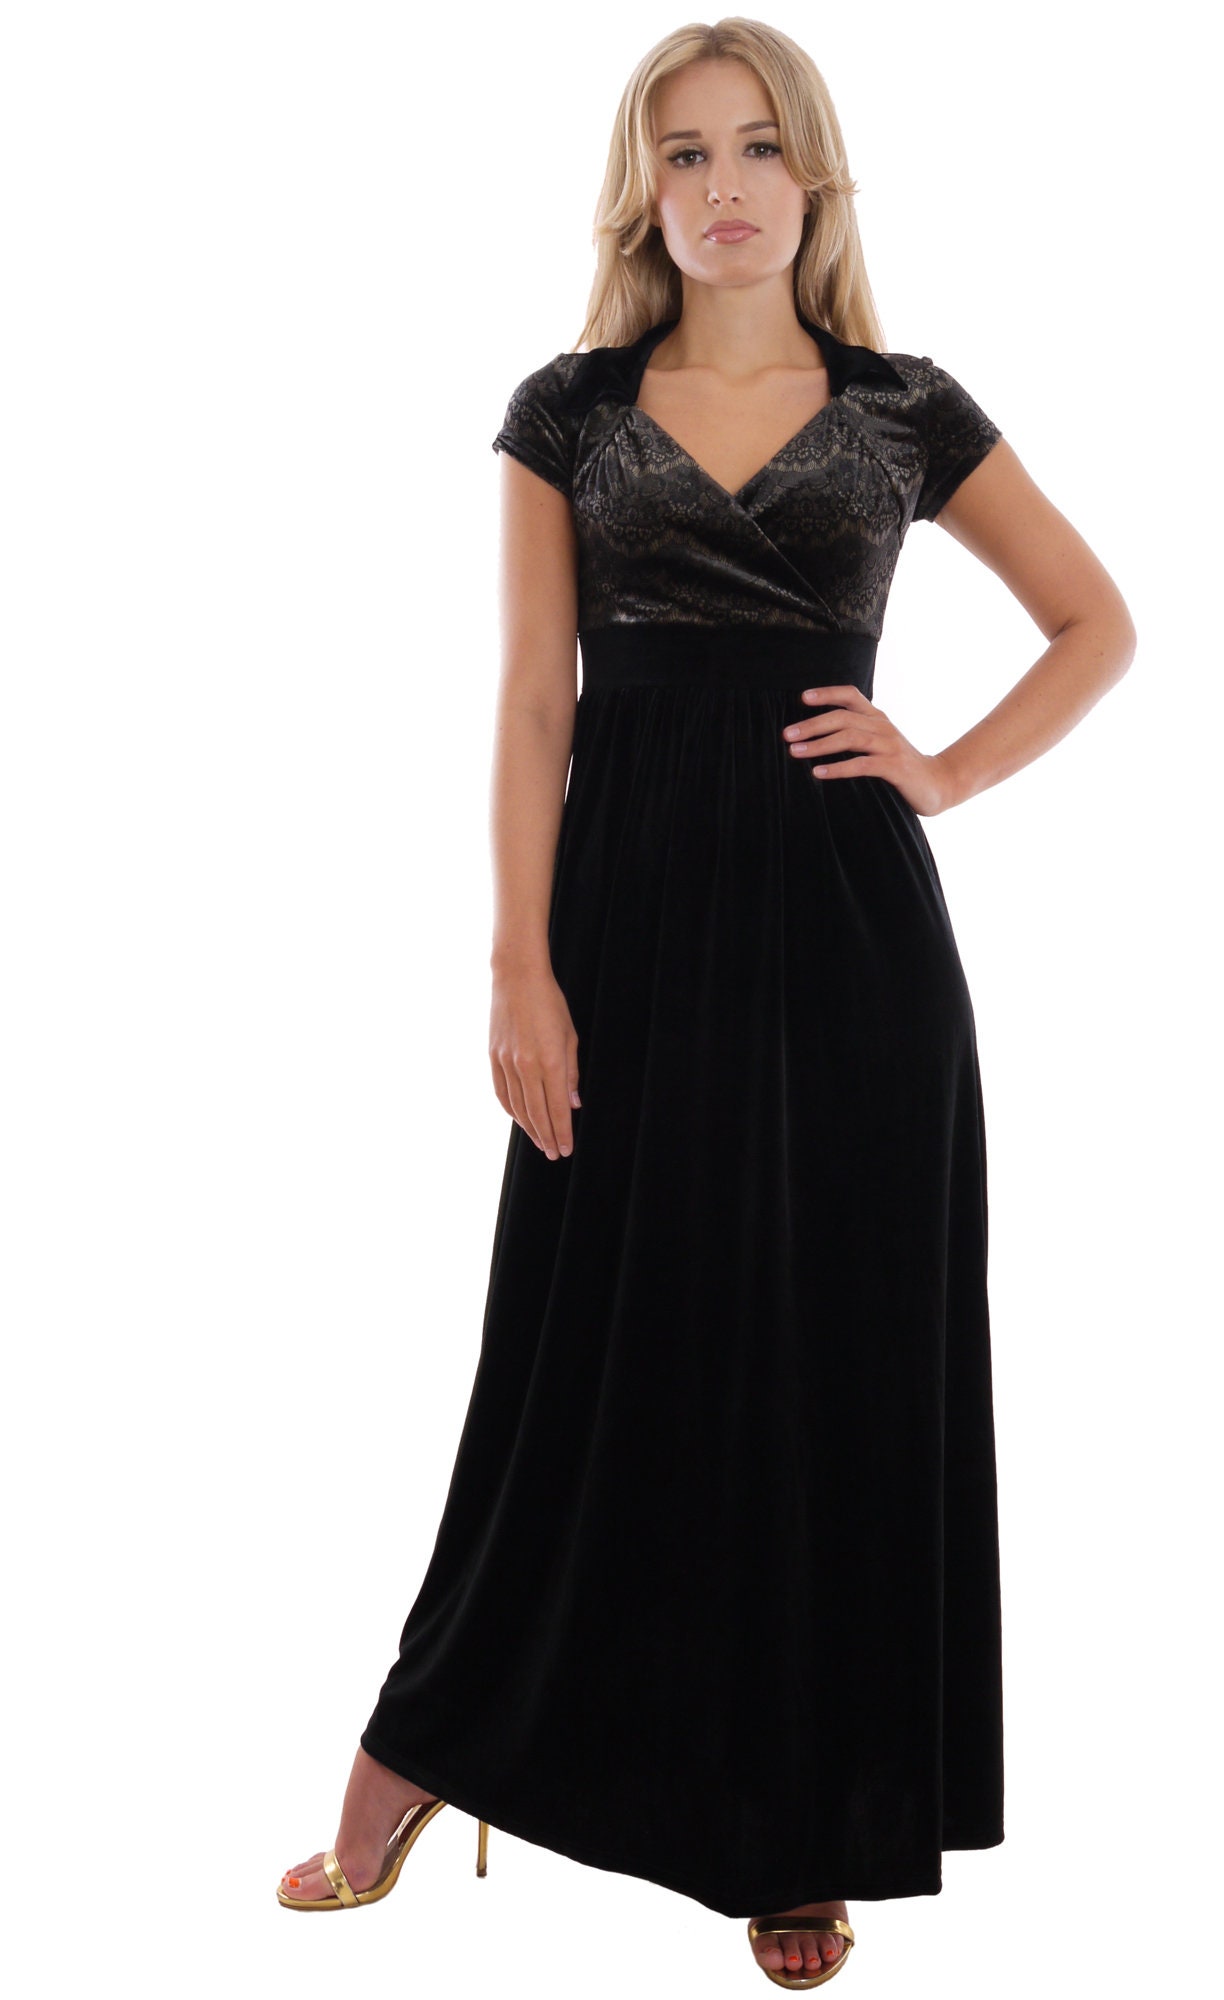 Black Evening Gown Dress Velvet Concert Dress Full Length Cap - Etsy UK